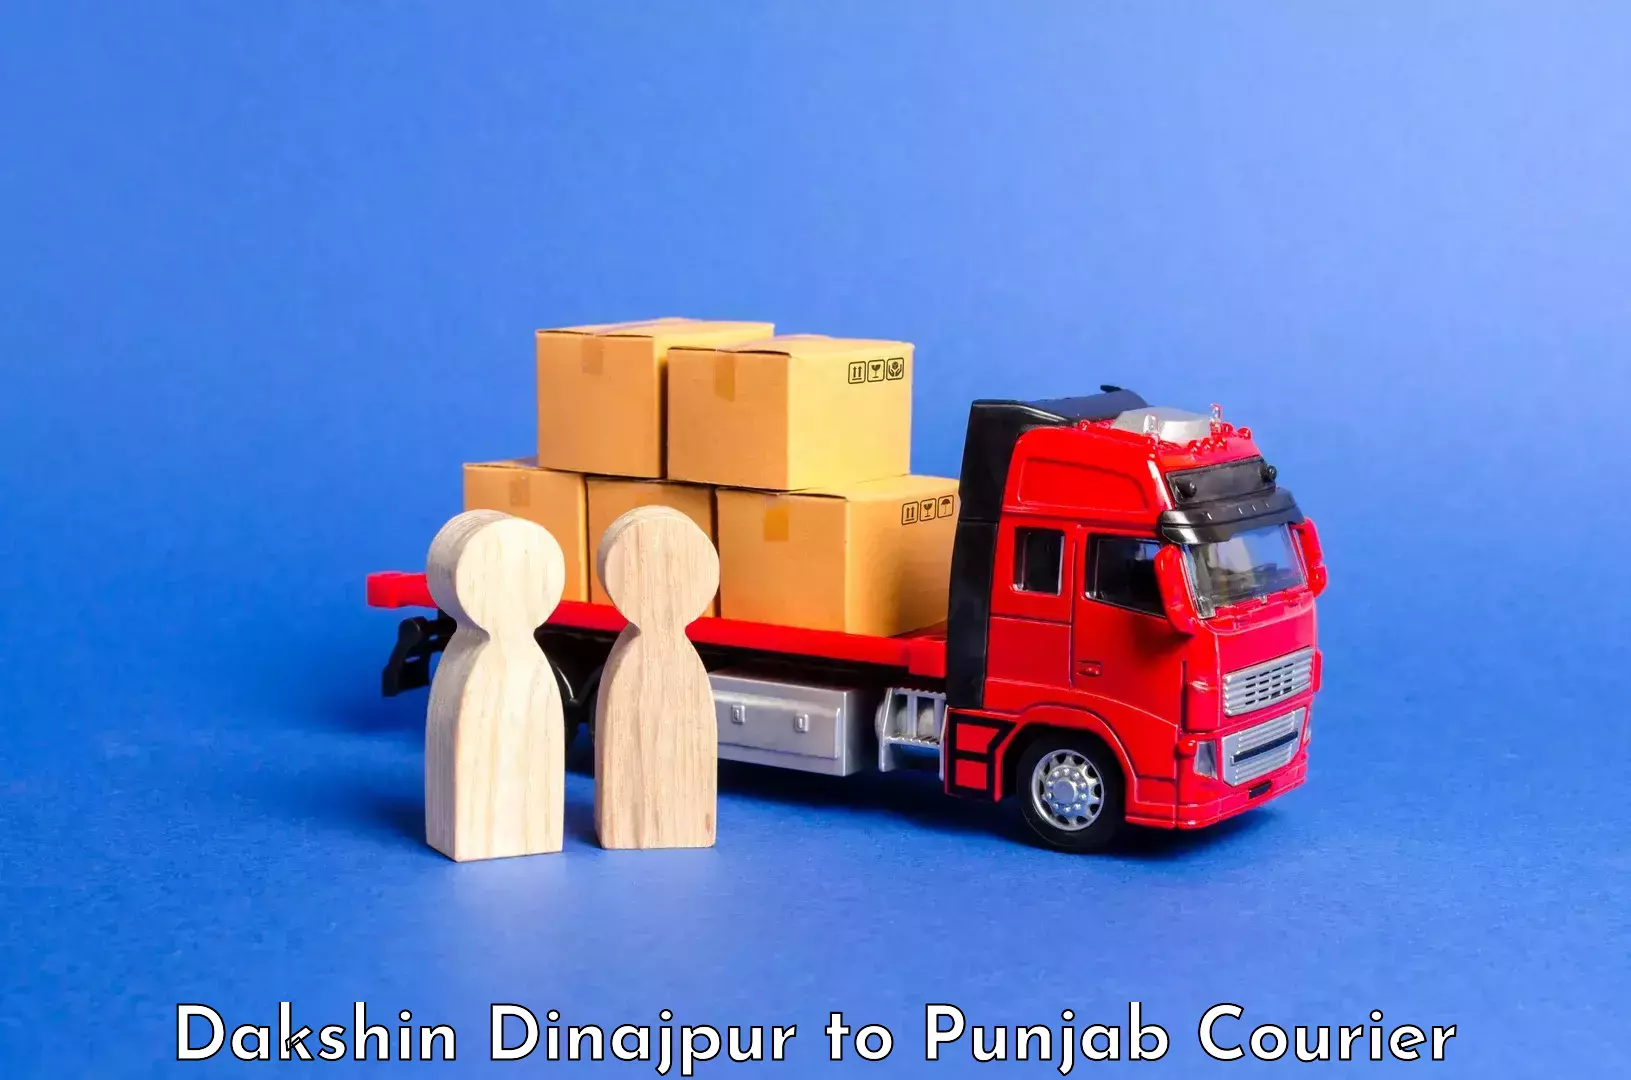 Premium luggage delivery in Dakshin Dinajpur to Kotkapura